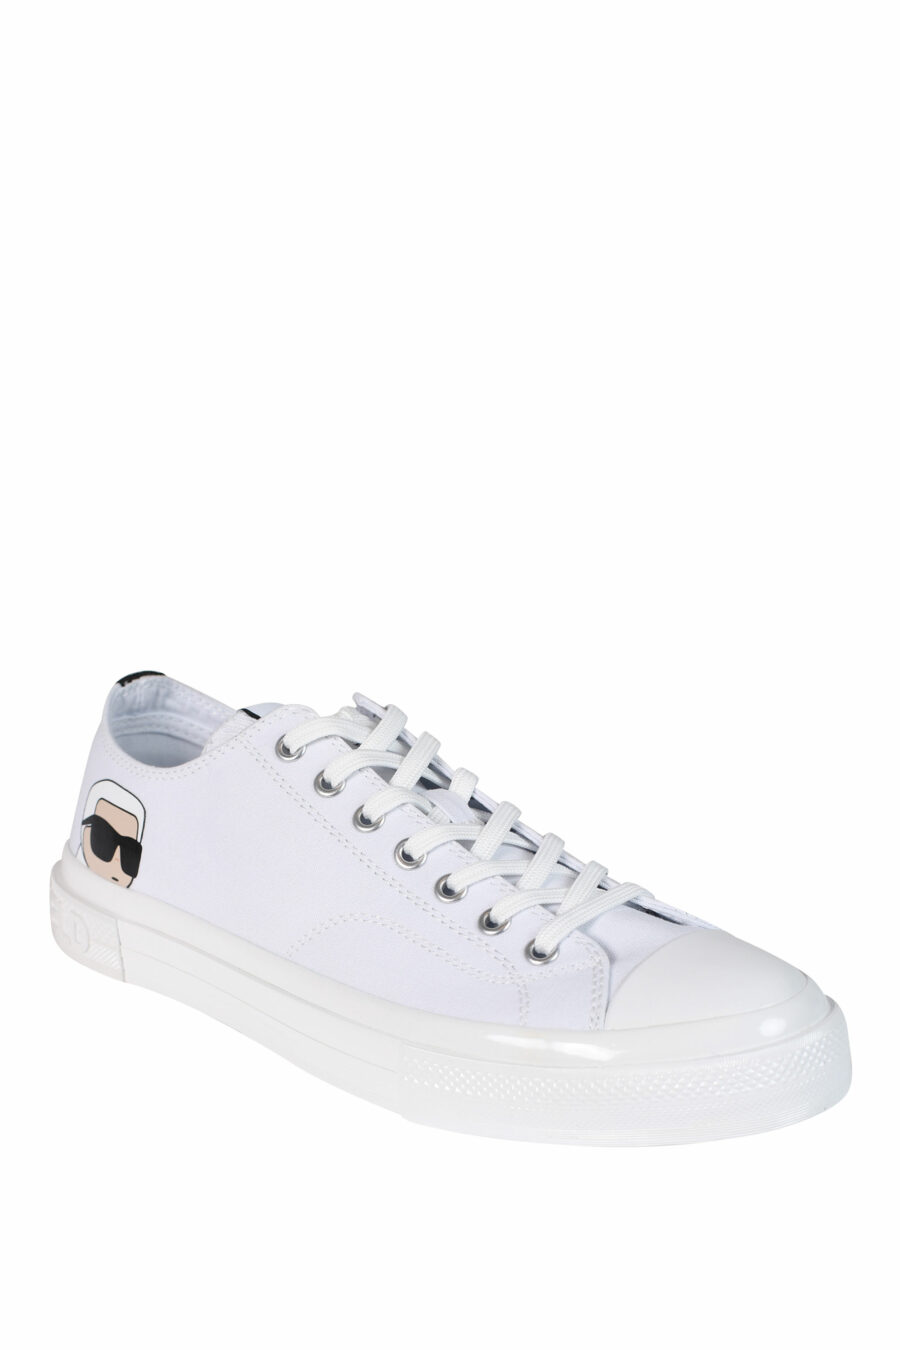 Zapatillas blancas con logo "karl" y suela blanca - 5059529249747 2